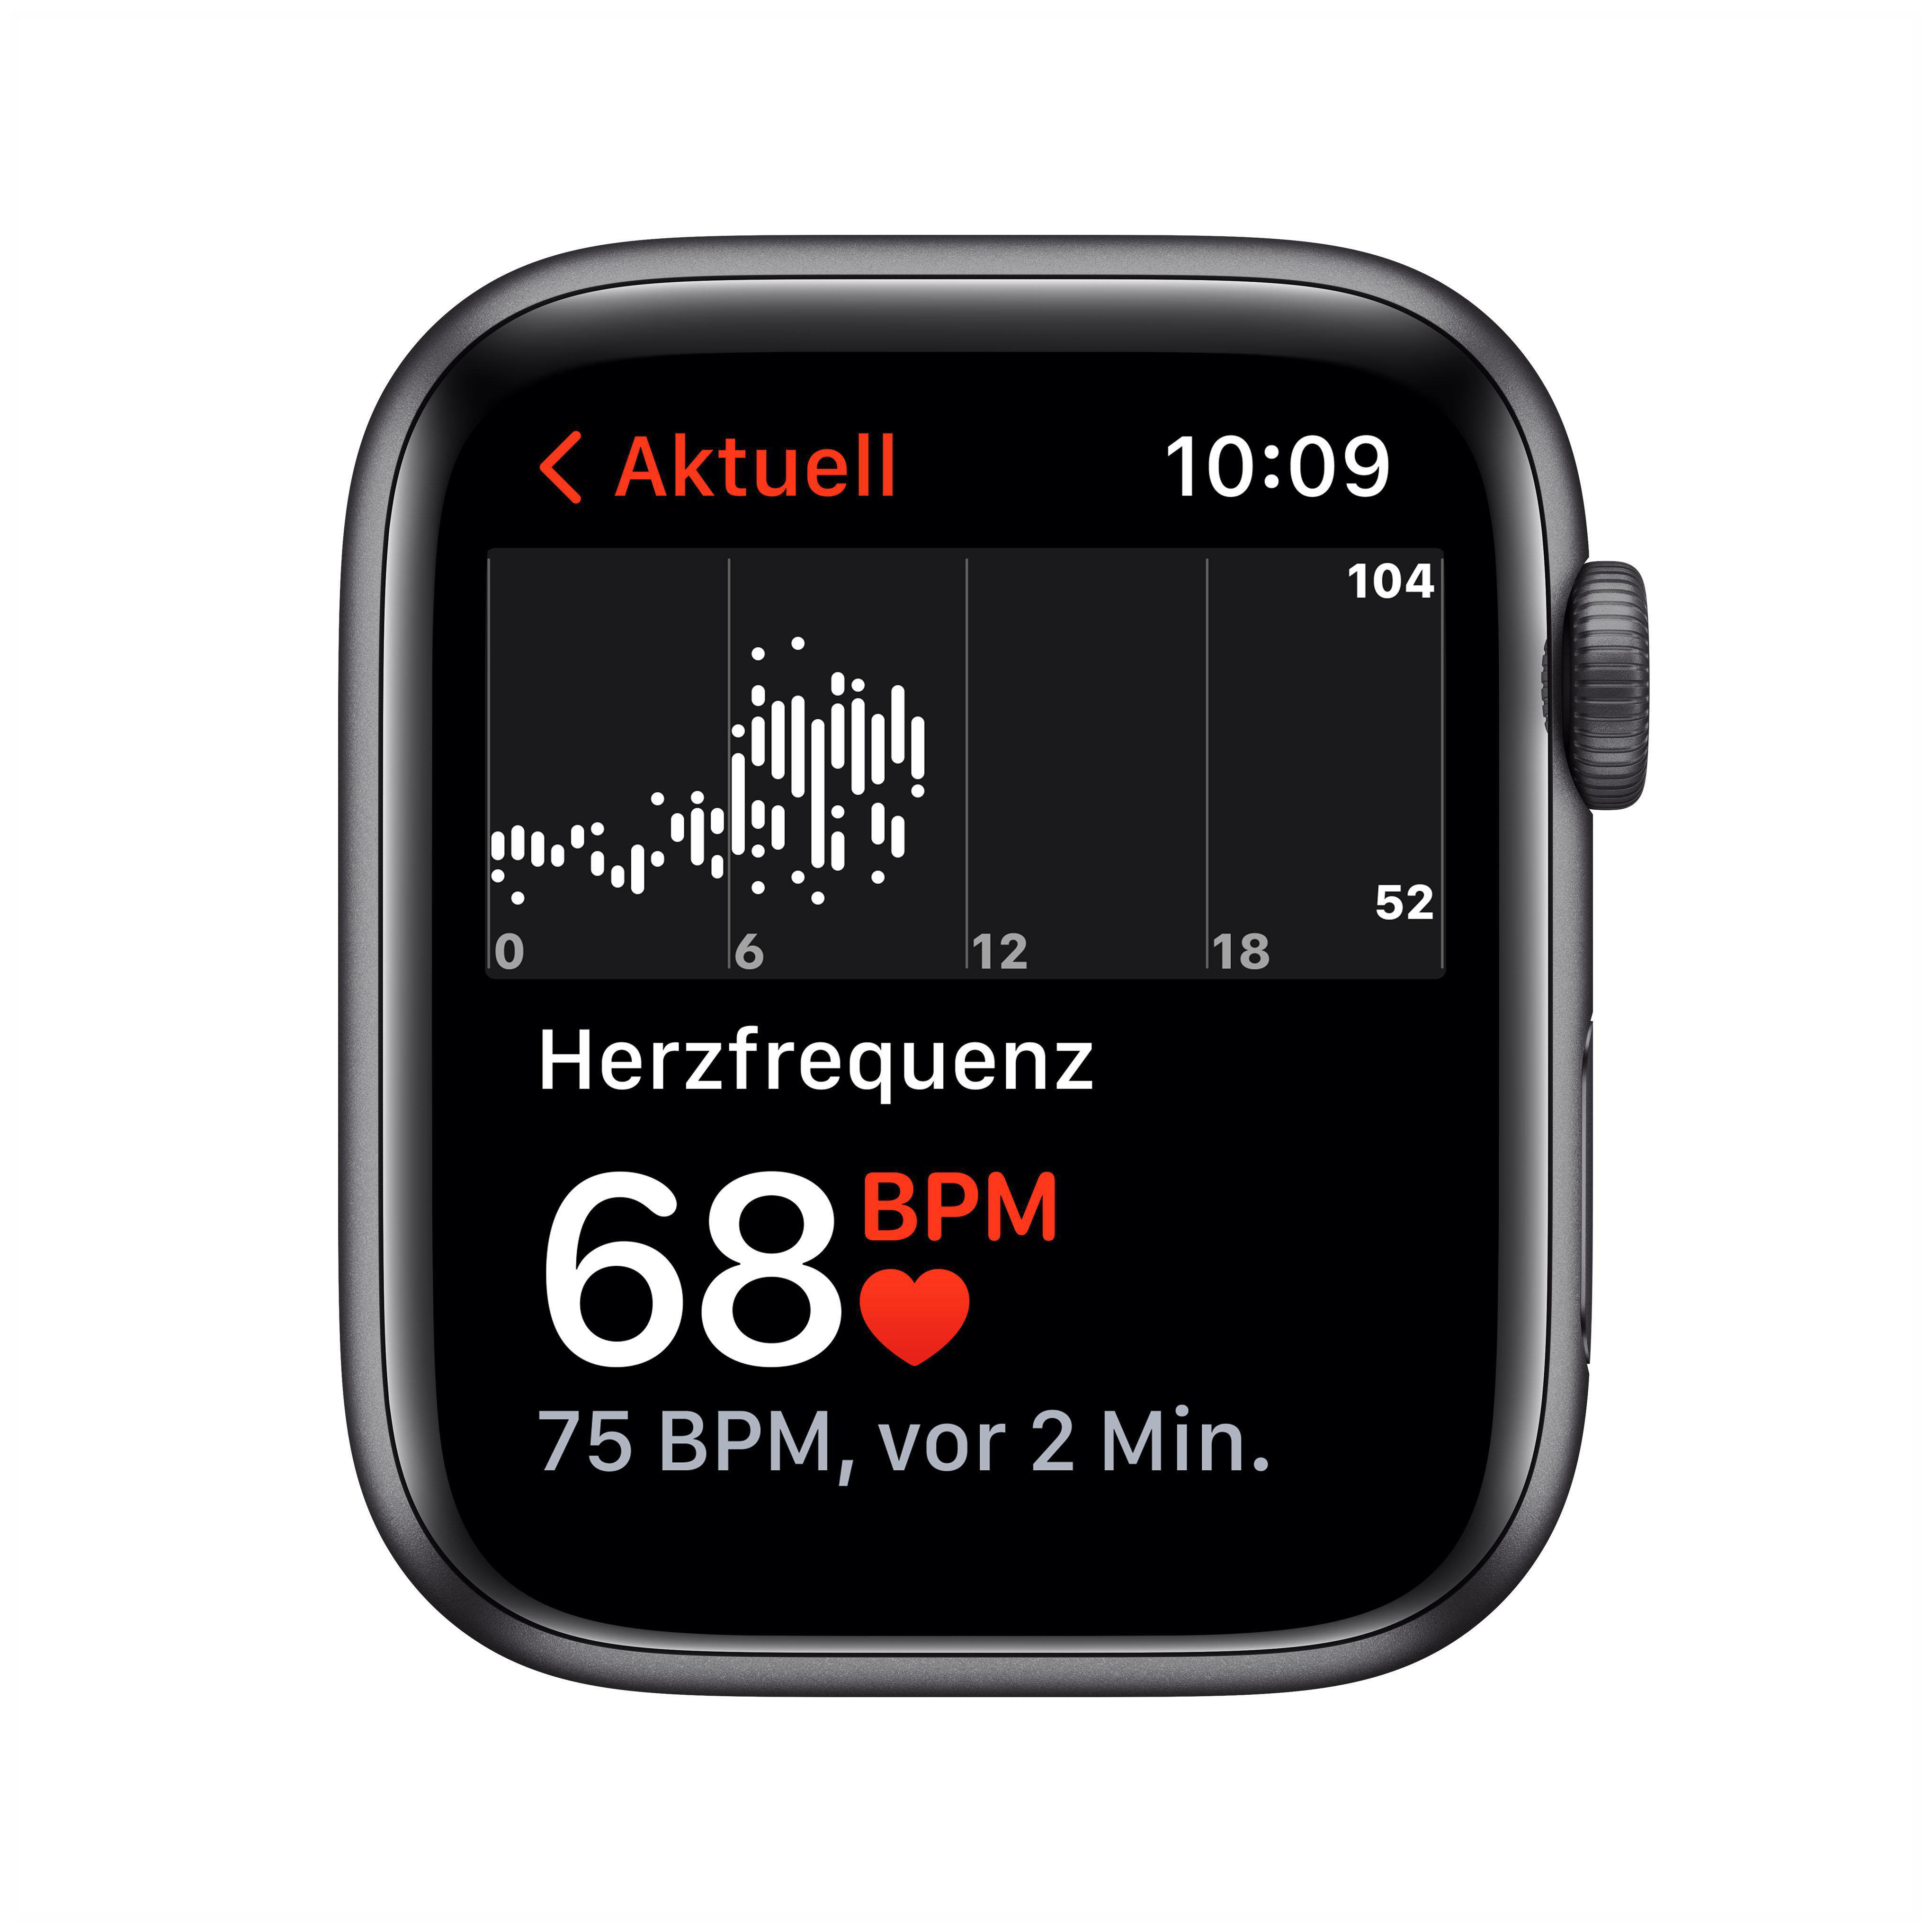 Nike Smartwatch Space (GPS) mm, Gehäuse: Anthrazit/Schwarz, APPLE Watch Grau 140 220 - Armband: SE Fluorelastomer, 44mm